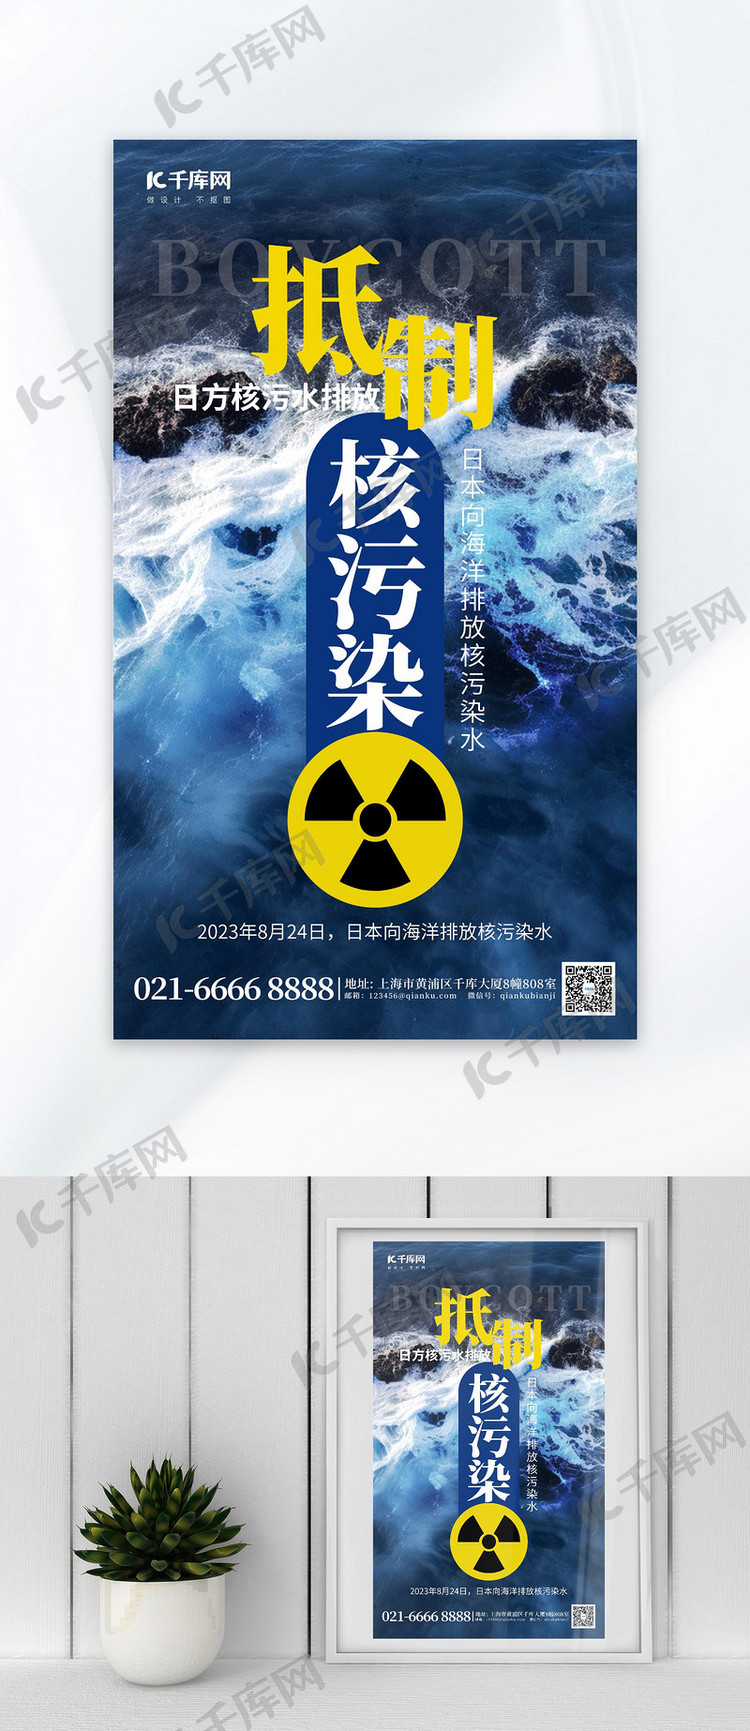 抵制核污染水海洋蓝色广告宣传海报